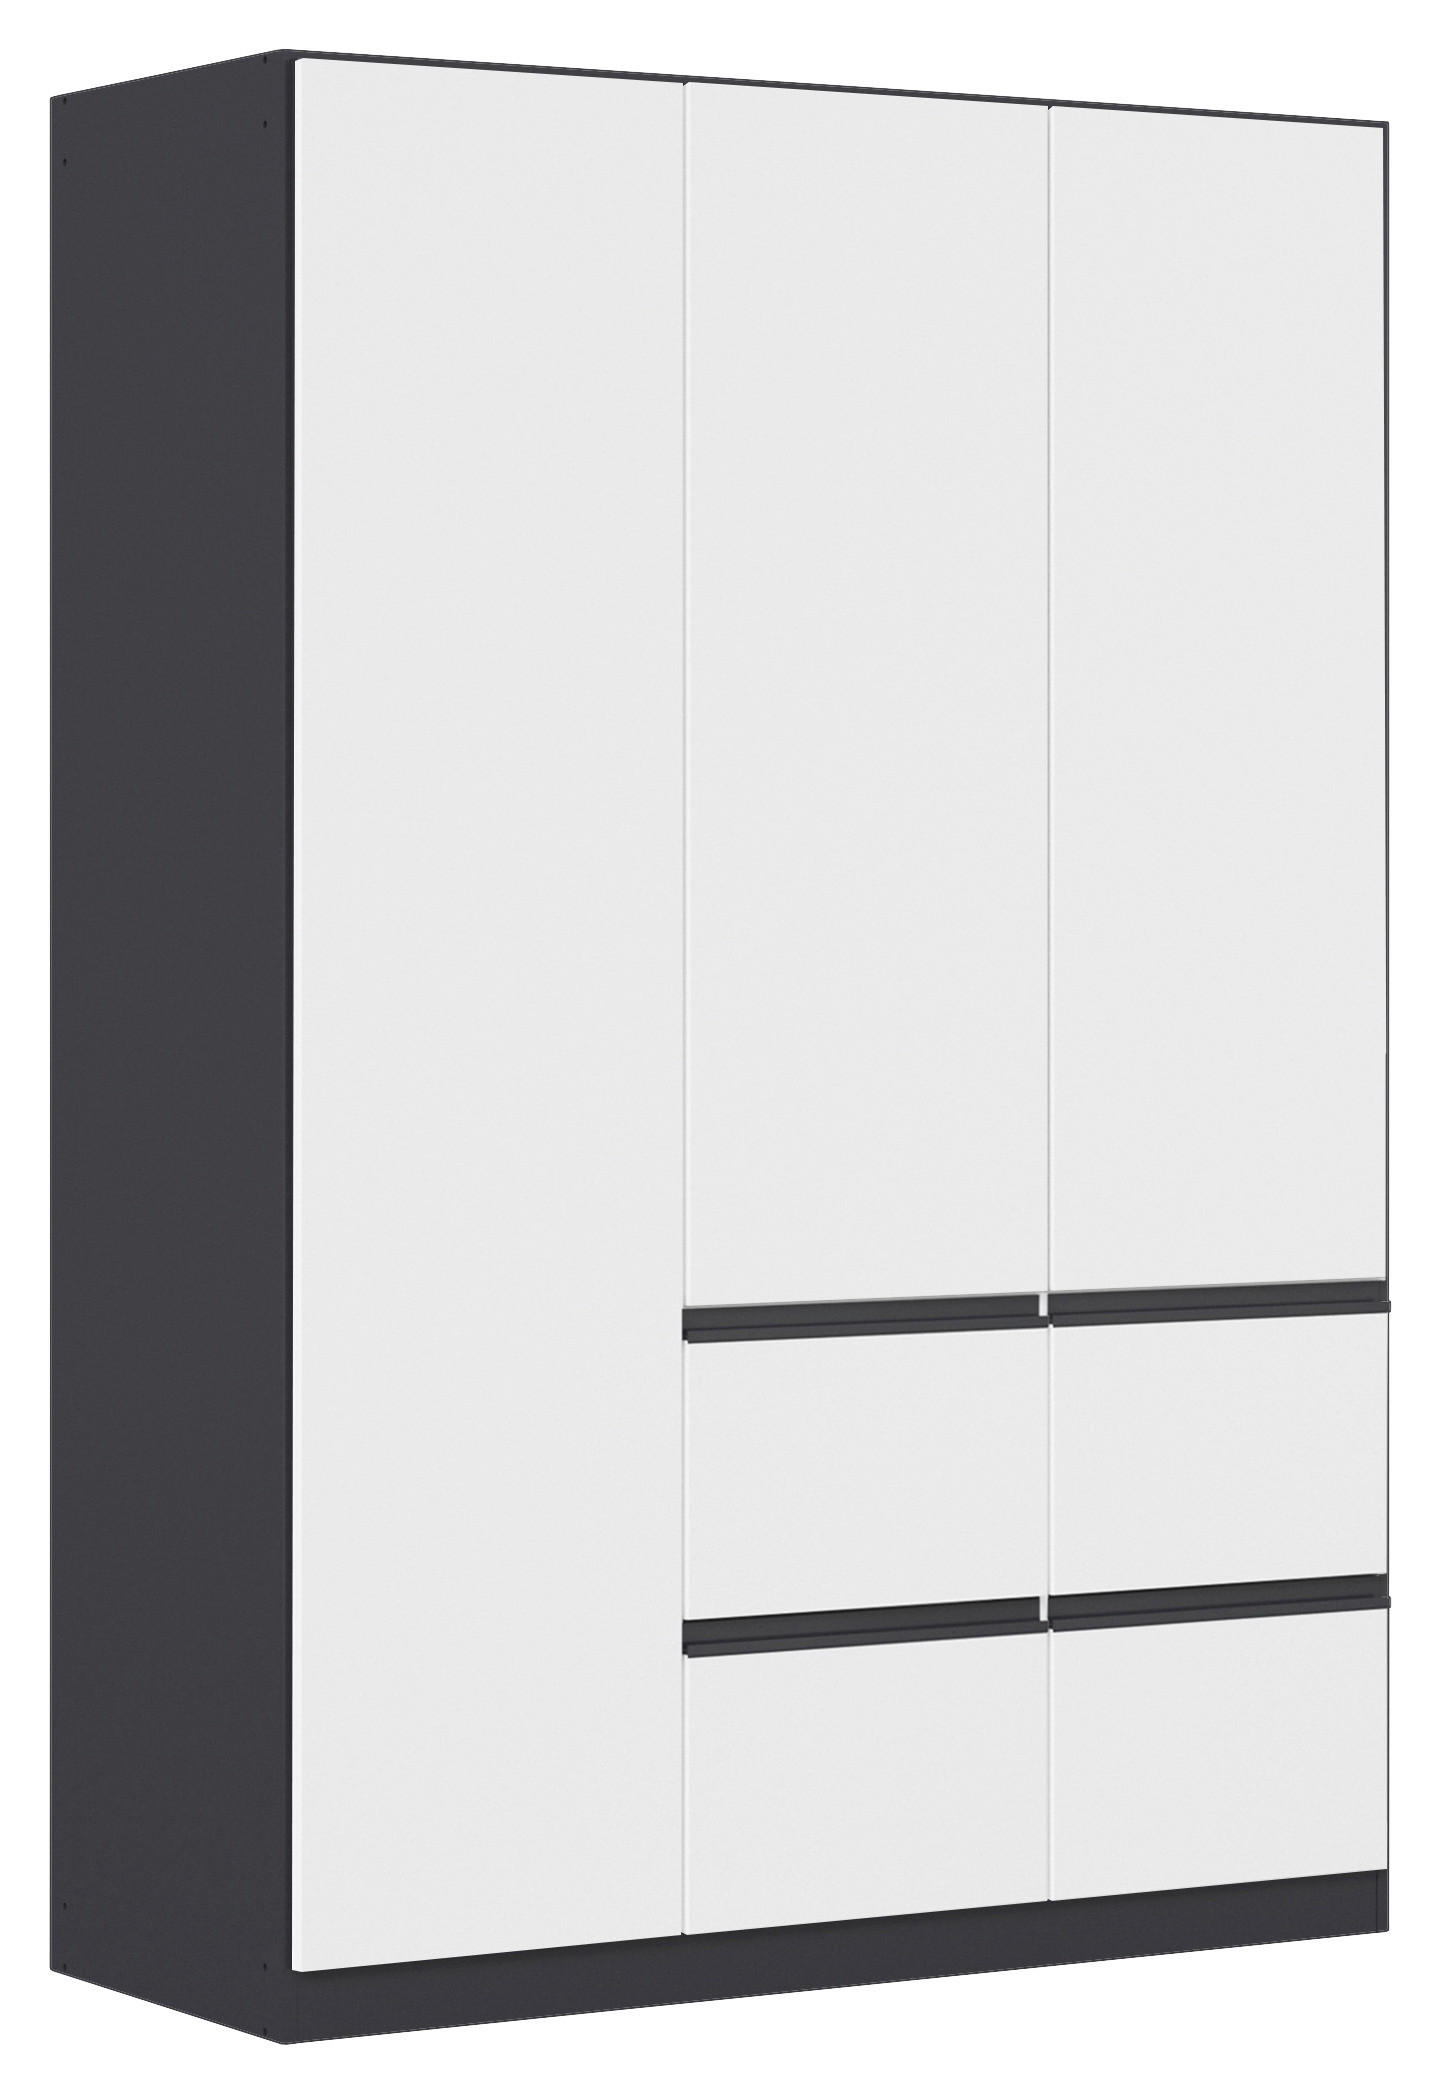 DREHTÜRENSCHRANK 3-türig Grau, Weiß  - Weiß/Grau, KONVENTIONELL, Holzwerkstoff/Kunststoff (136/197/54cm) - Xora